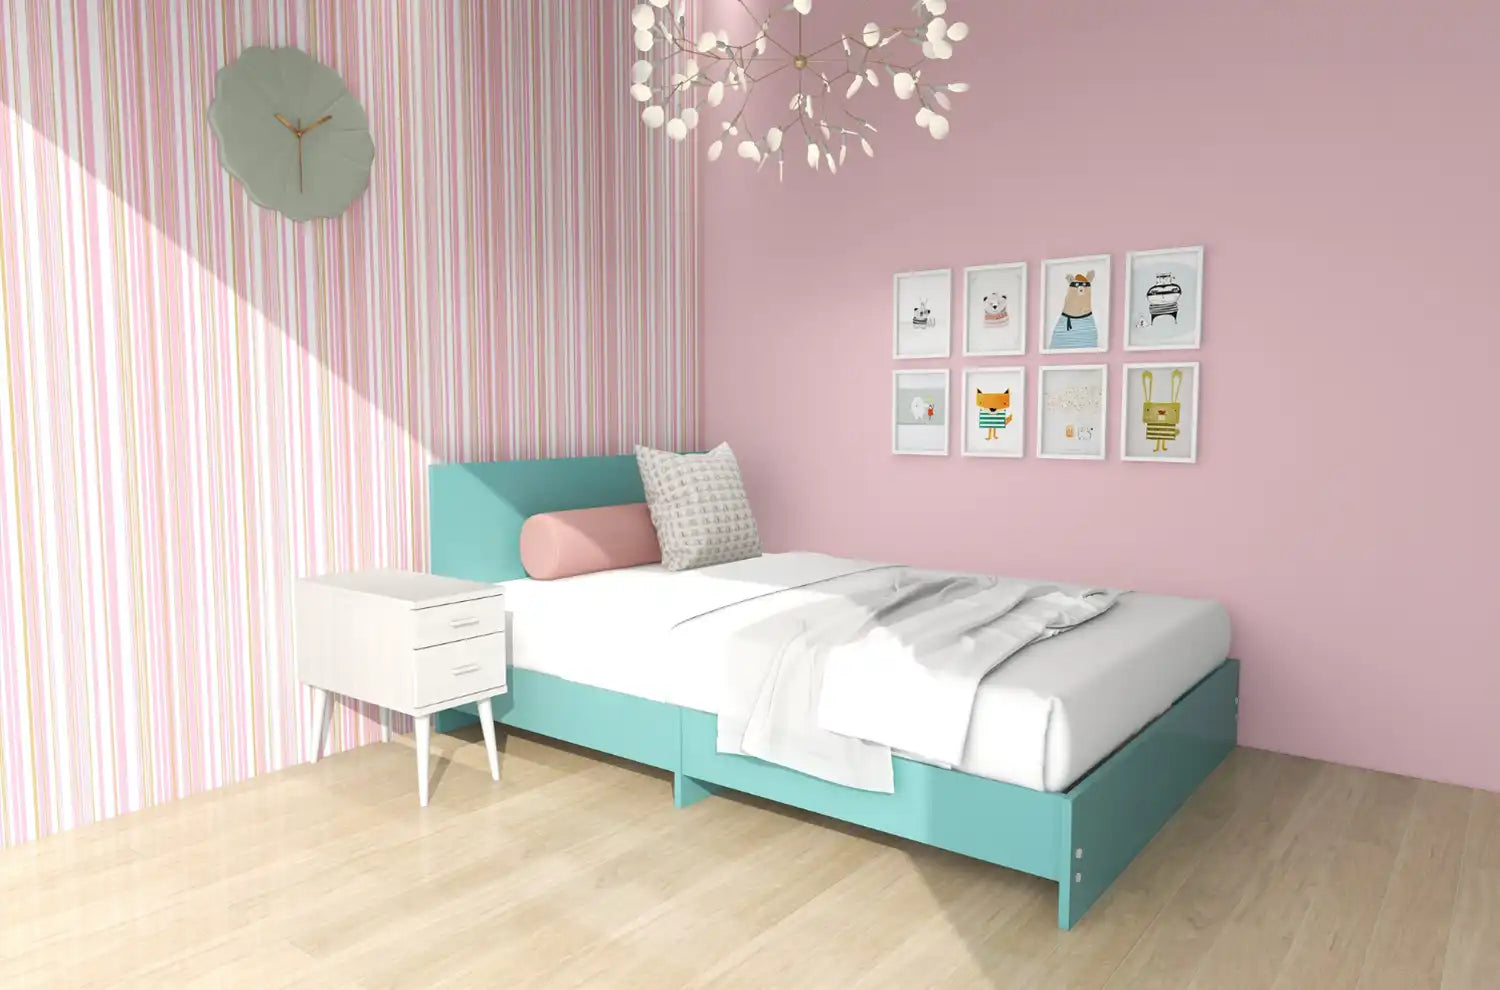 ピンクの壁紙の可愛い子供部屋にブルーのベッドがある